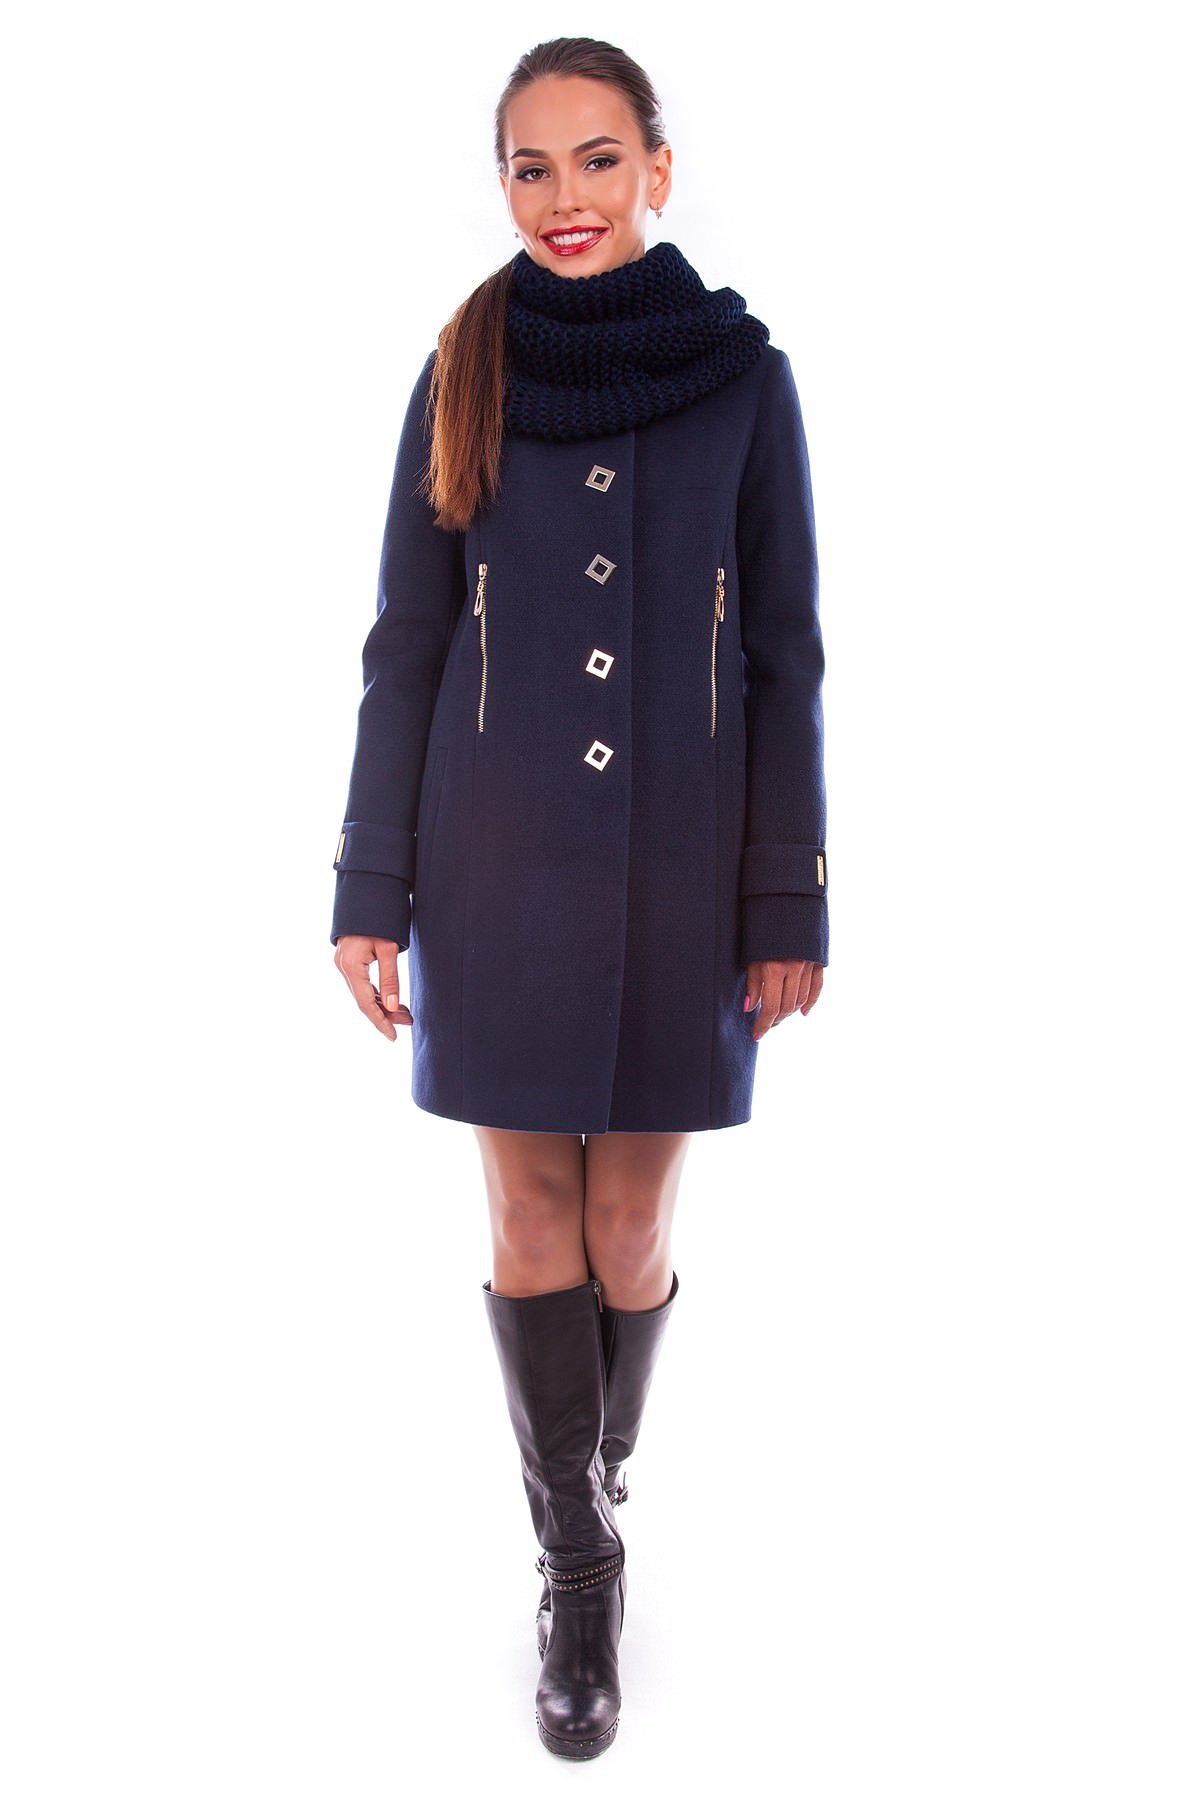 Женское пальто оптом от производителя Modus Пальто Палермо хомут зима